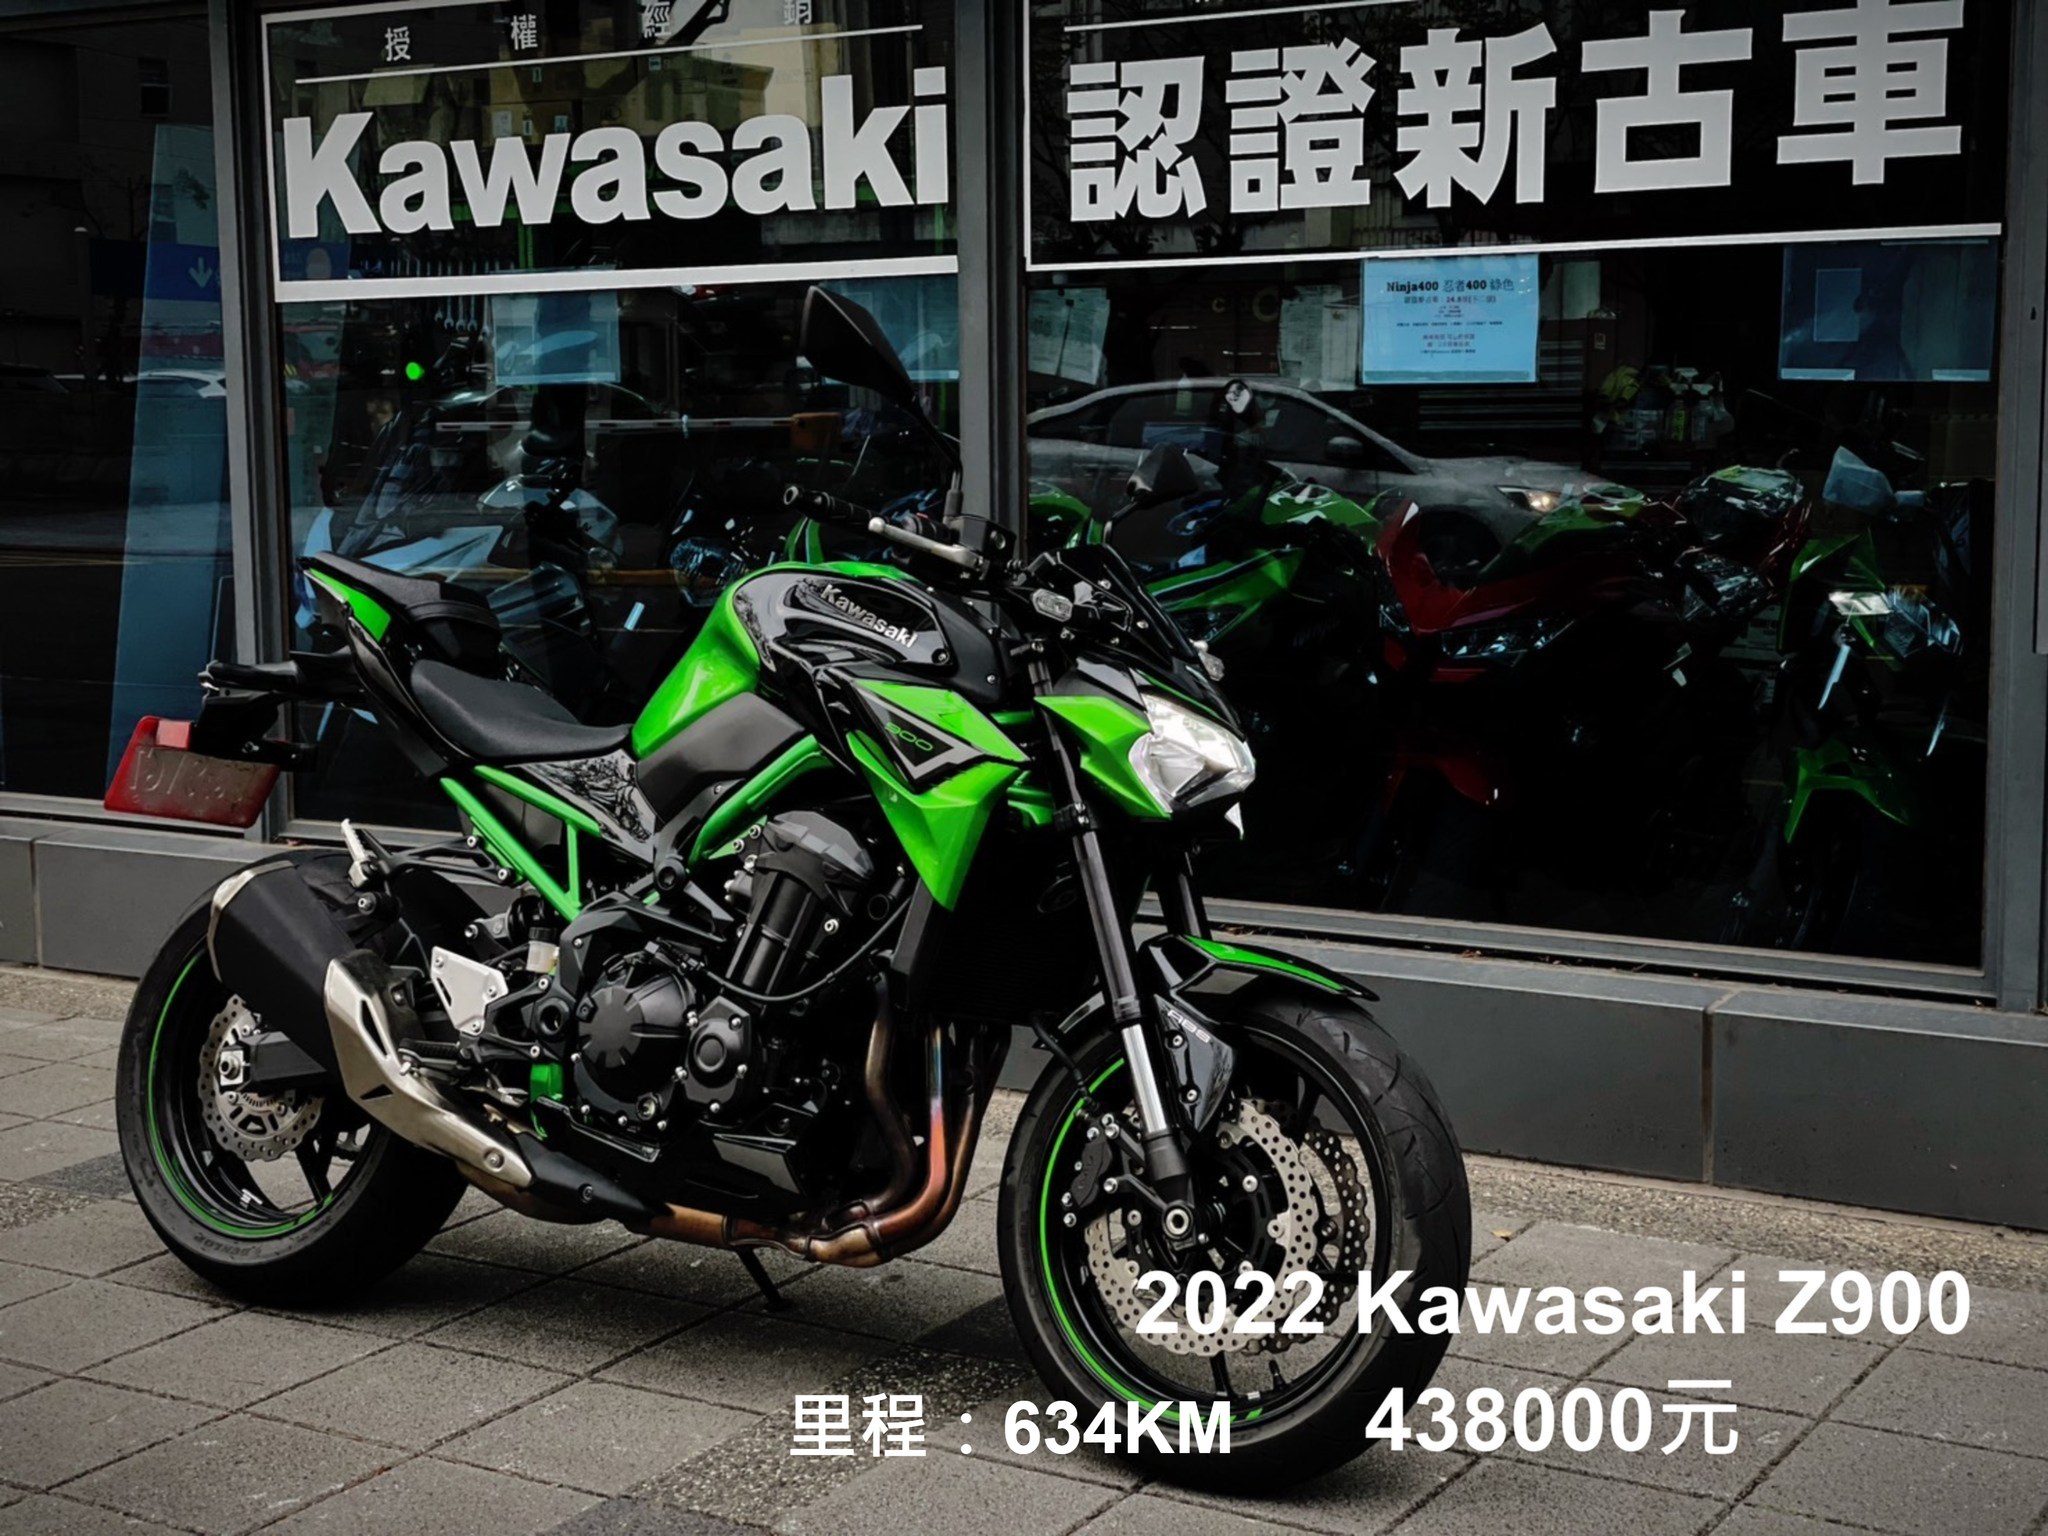 【柏霖動機Kawasak職人-阿弘】KAWASAKI Z900 - 「Webike-摩托車市」 認證中古車 KAWASAKI Z900 ABS 新古車 認證保證